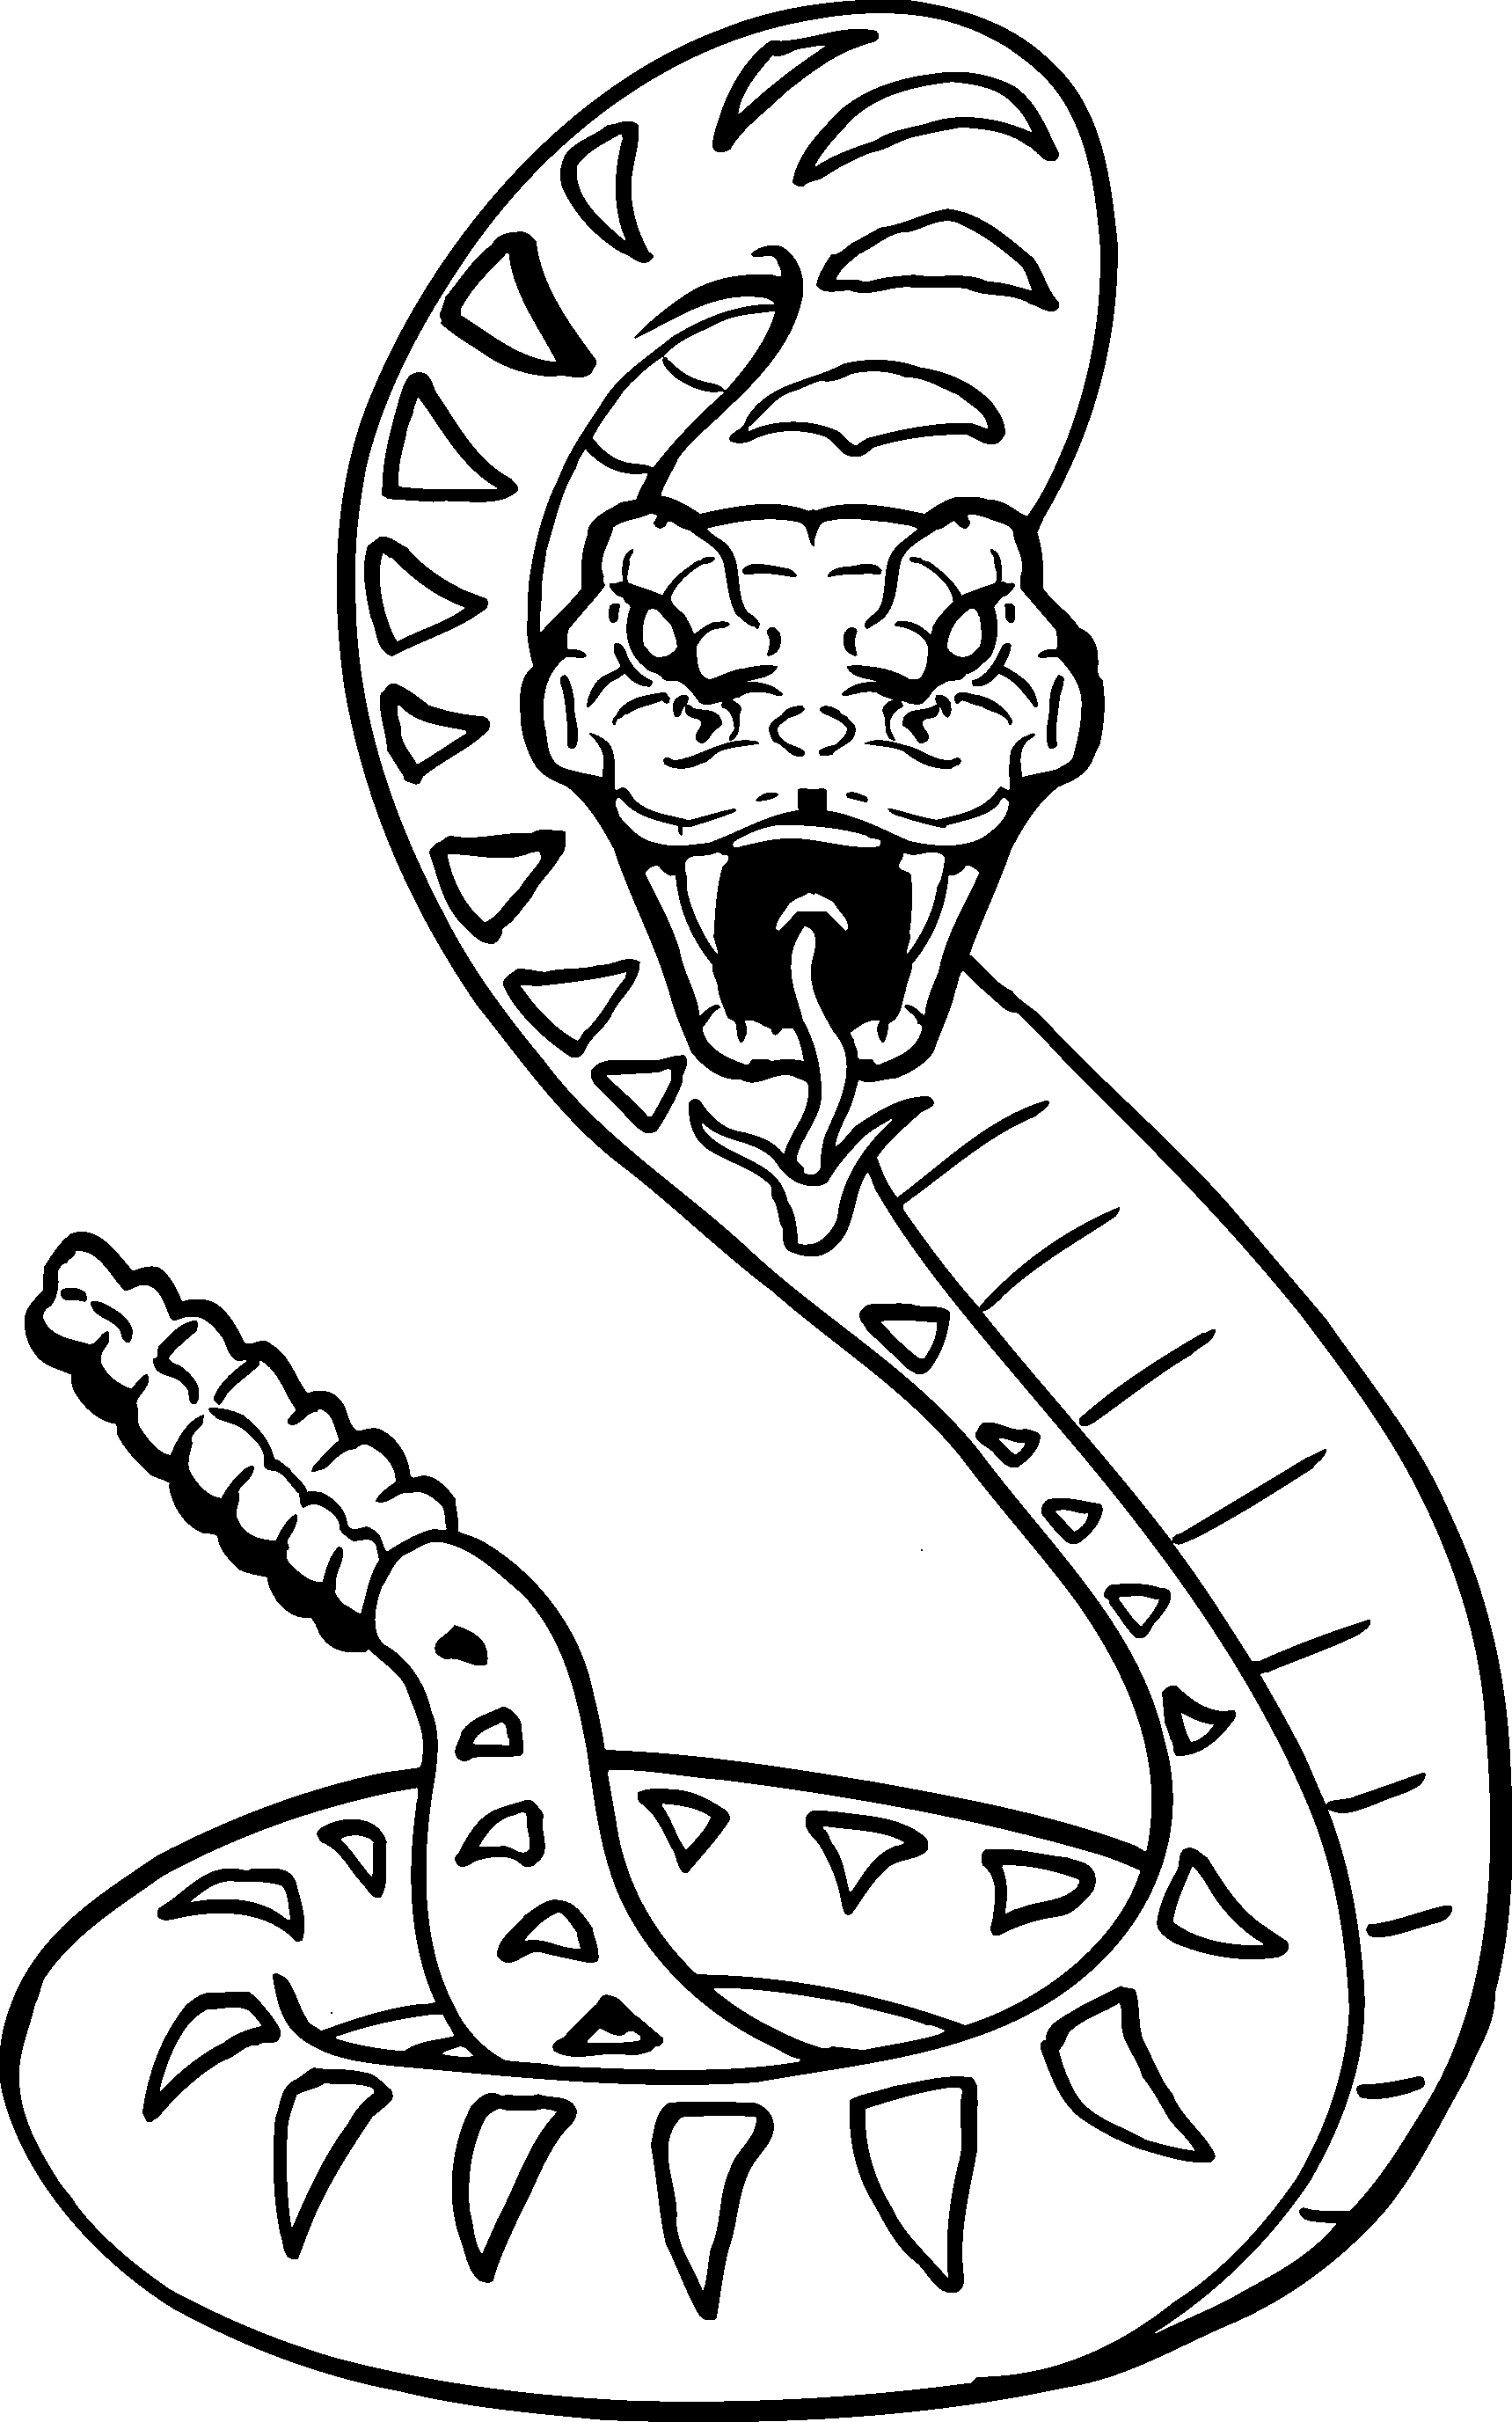 Viper Snake Drawing